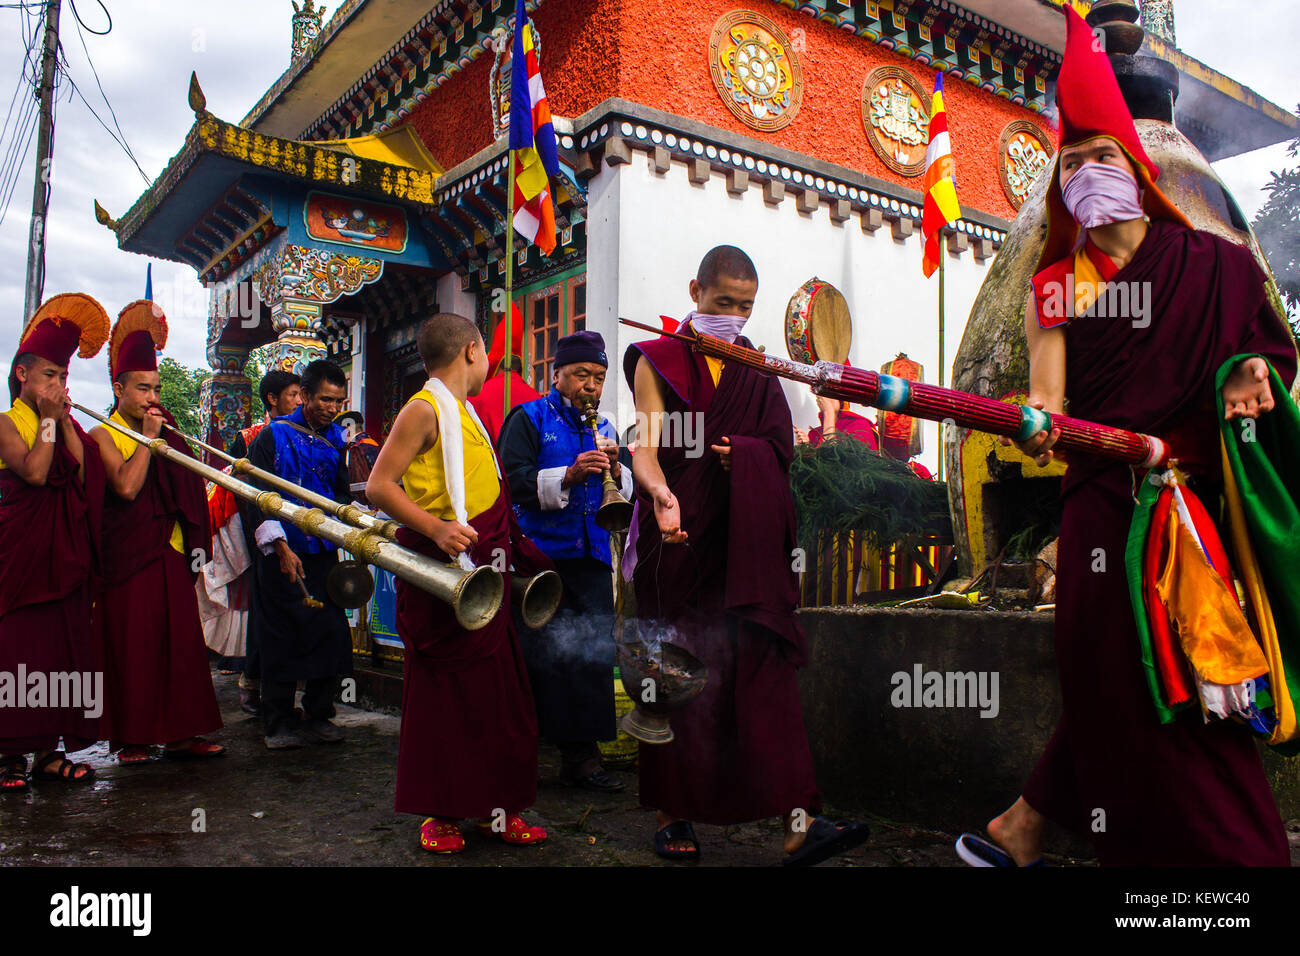 Agosto 29, 2015 - amicizia, armonia, un monte alto e una divinità irata '"" Questi sono i quattro cose che pang lhabsol, un festival annuale in Sikkim è di circa. il tranquillo colle-stato è stato una volta lacerata da conflitti e inimicizia tra il lepchas e il bhutias (di origine tibetana). La gente del luogo credo che pang lhabsol è stato per la prima volta celebrata a volte nel XIII secolo per contrassegnare l'inizio di relazioni pacifiche tra i gruppi guerriglieri. lepcha thekongtek capo e tibetano crown prince khya bumsa eretto nove lastre a kabilunchok (nei pressi di Gangtok, l'attuale capitale), legato negli intestini degli animali aro Foto Stock